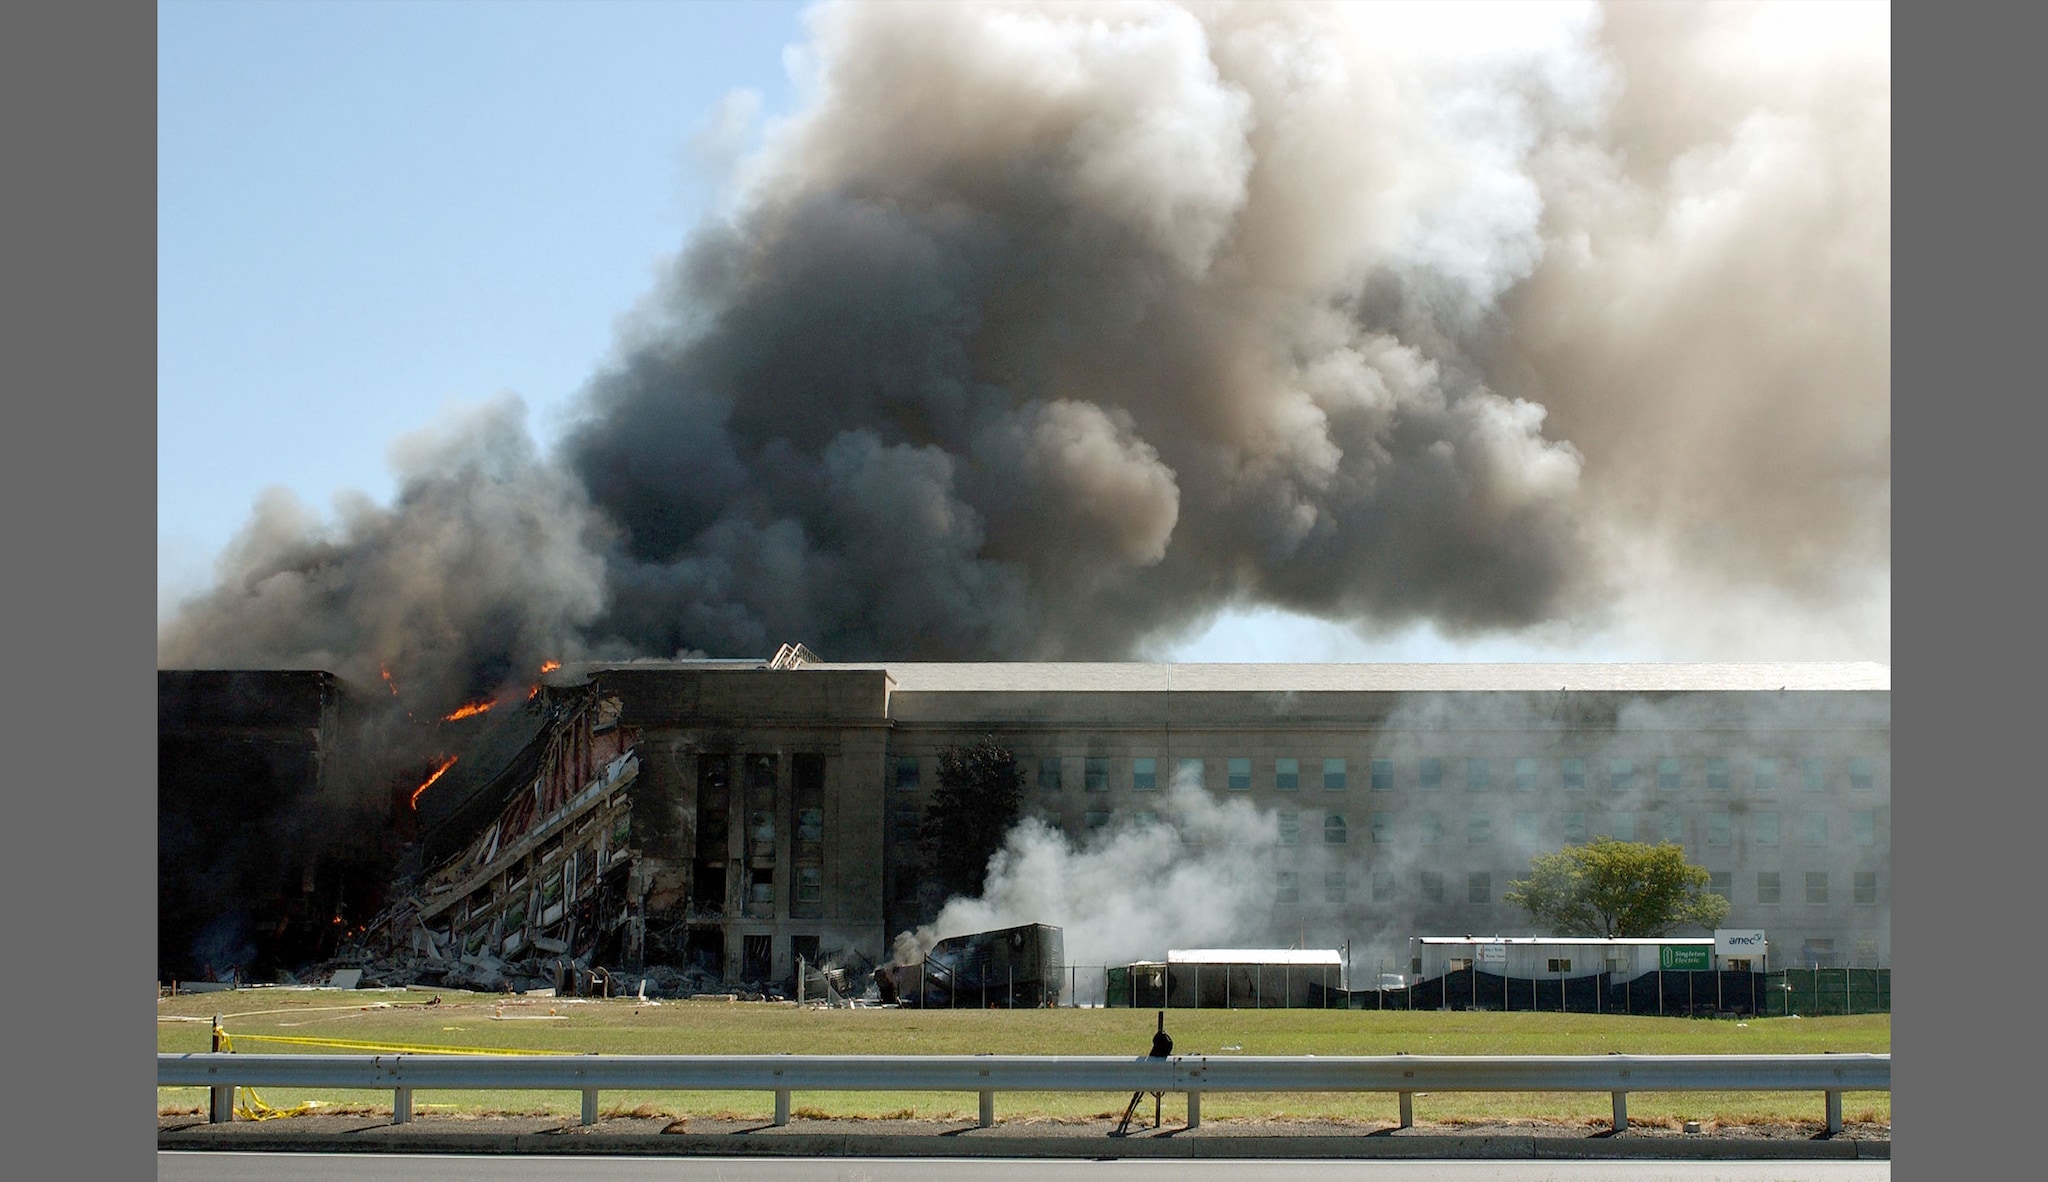 Pentagon after attack on September 11, 2001